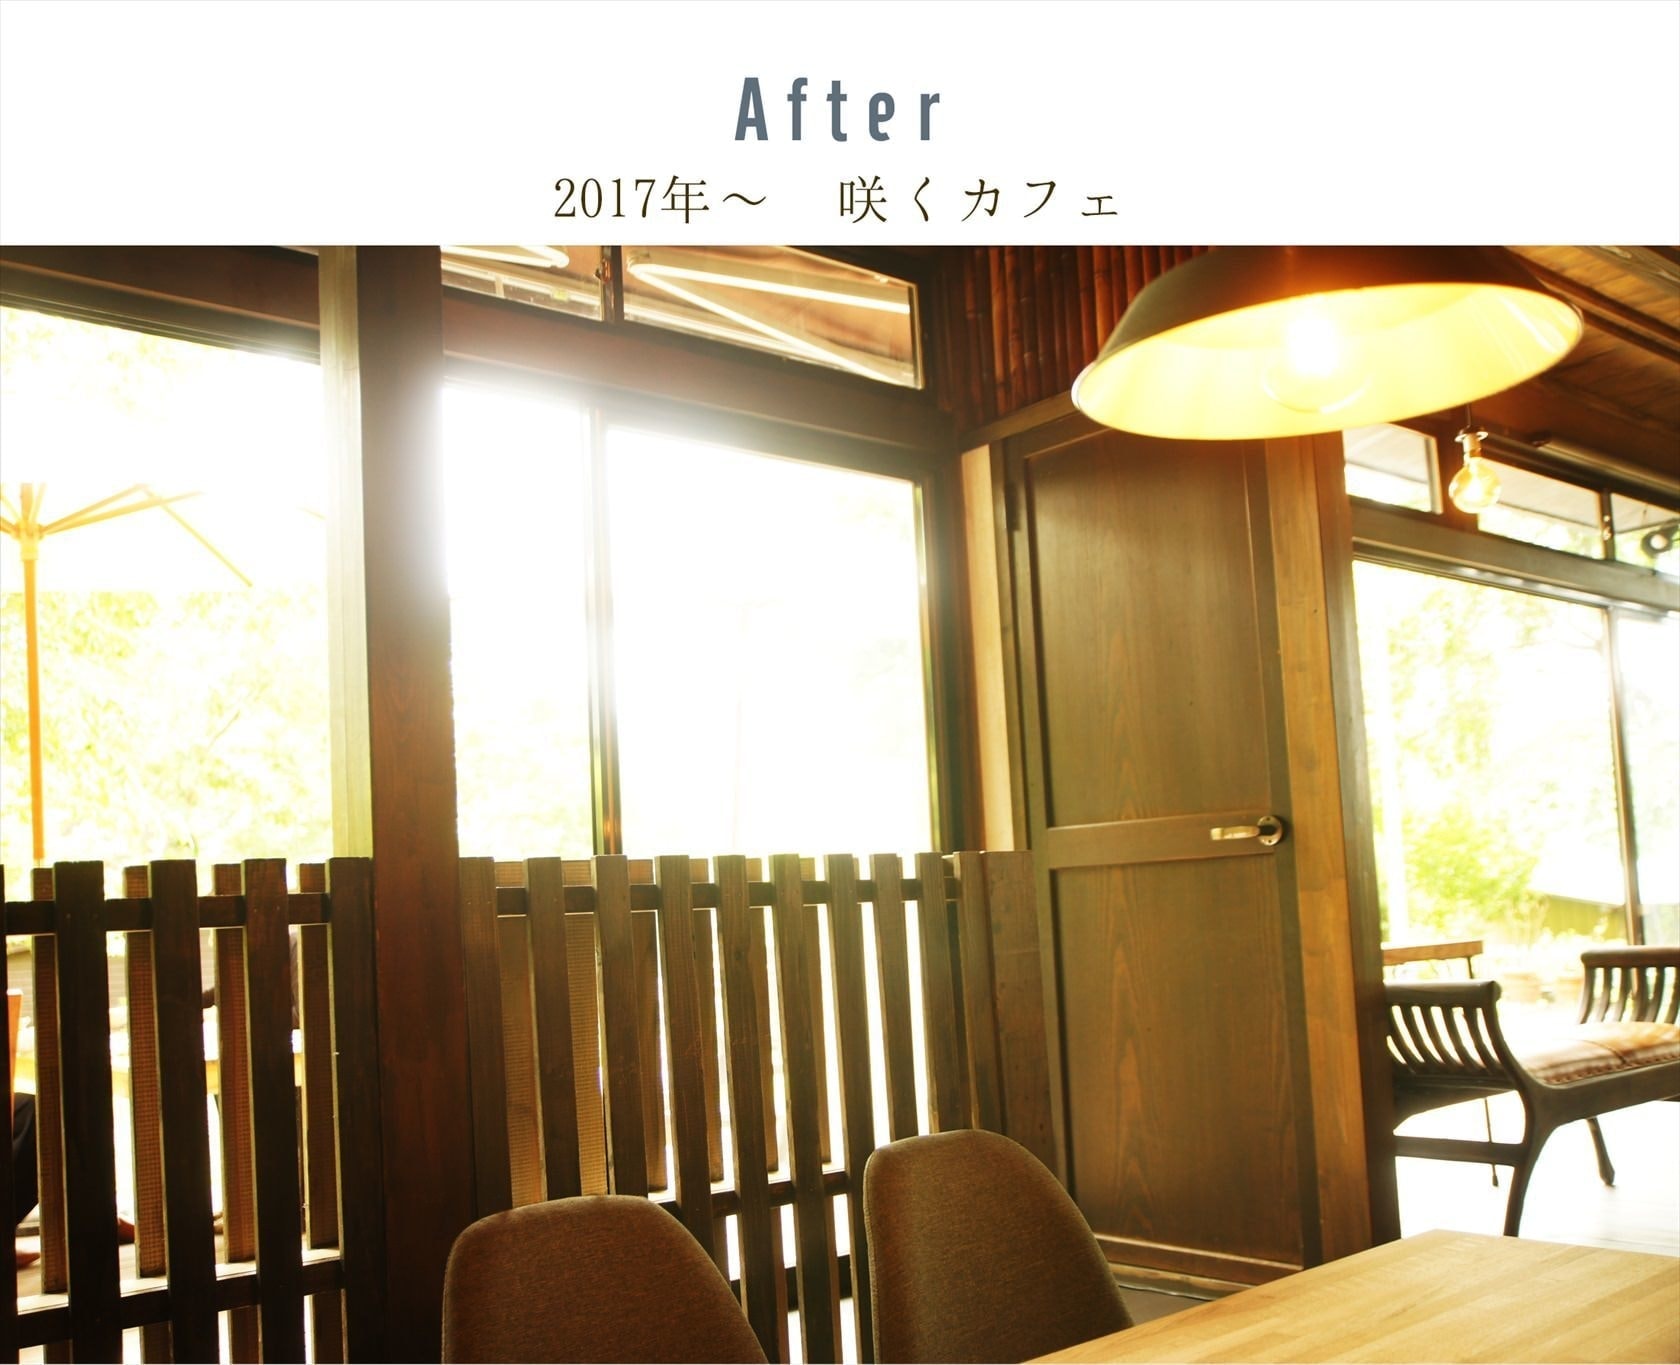 咲くカフェ。茨城・県北、奥久慈大子のカフェ＆ゲストハウス。ランチ、ディナー、コーヒー、宿泊。ビフォーアフター写真。リビングアフター。